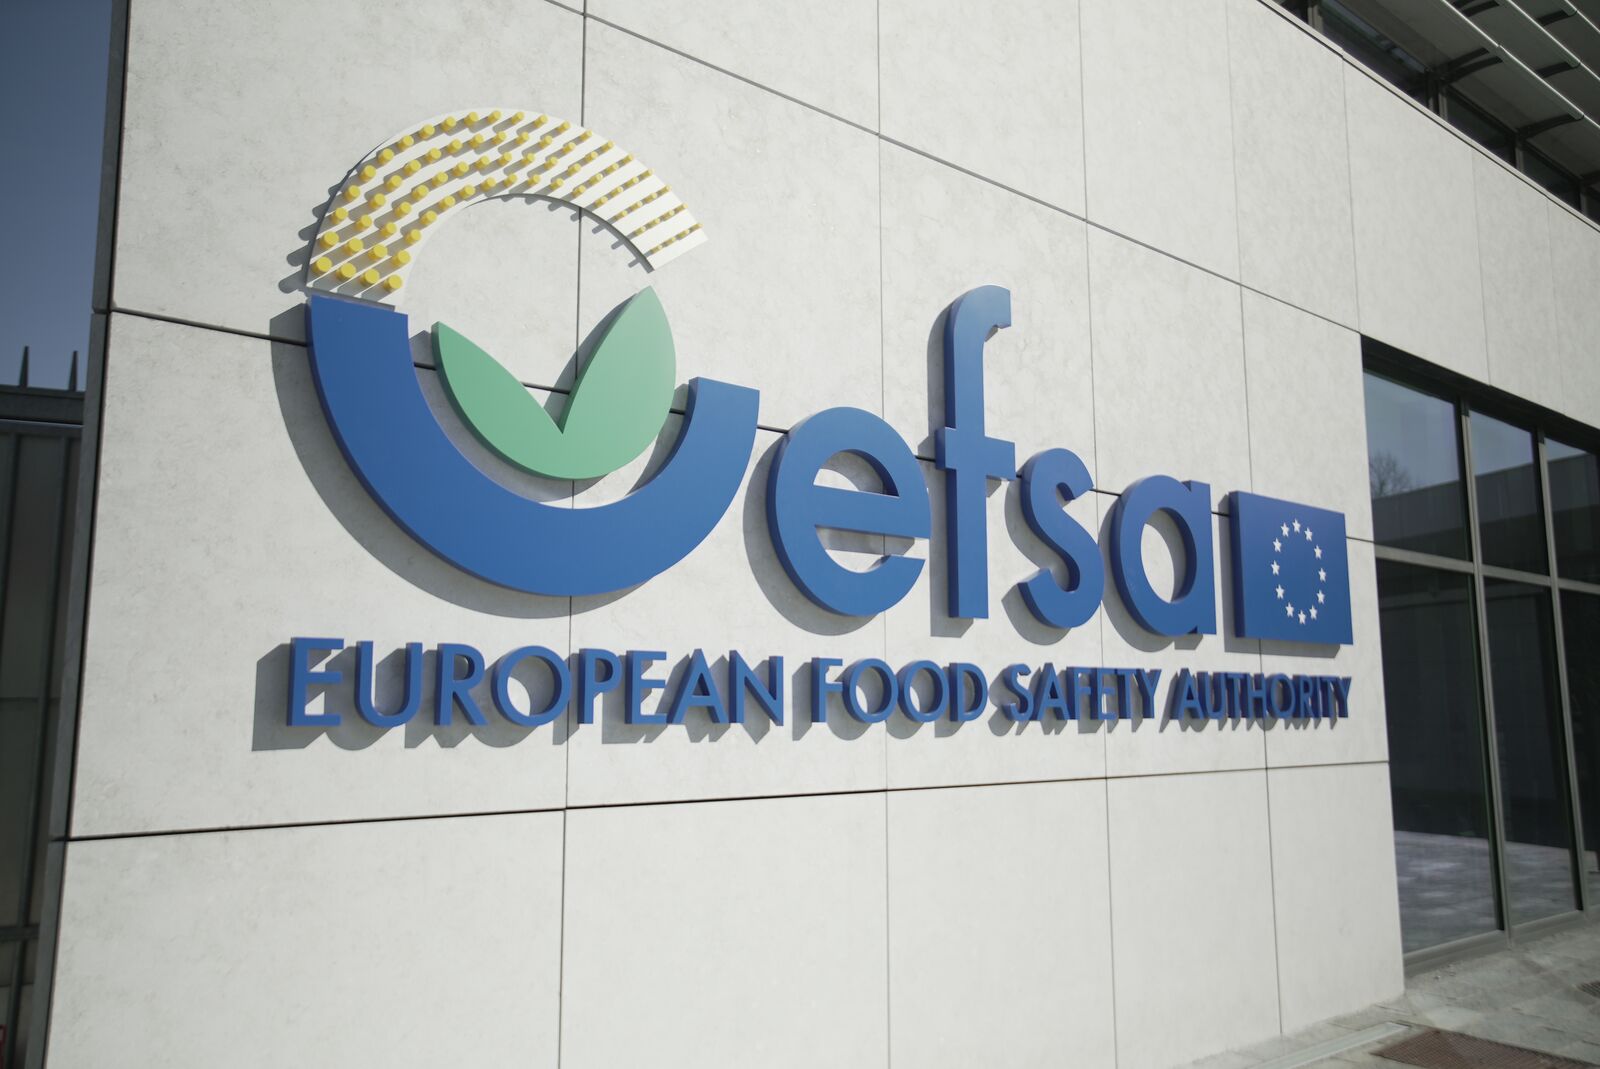 Um das Bewusstsein für Lebensmittelsicherheit weiter auszubauen, adressiert die europäische Behörde für Lebensmittelsicherheit (EFSA) das Thema gemeinsam mit Partnern aus den EU-Ländern in der bereits dritten Ausgabe der Kampagne „#EUChooseSafeFood“. (Foto: EFSA)